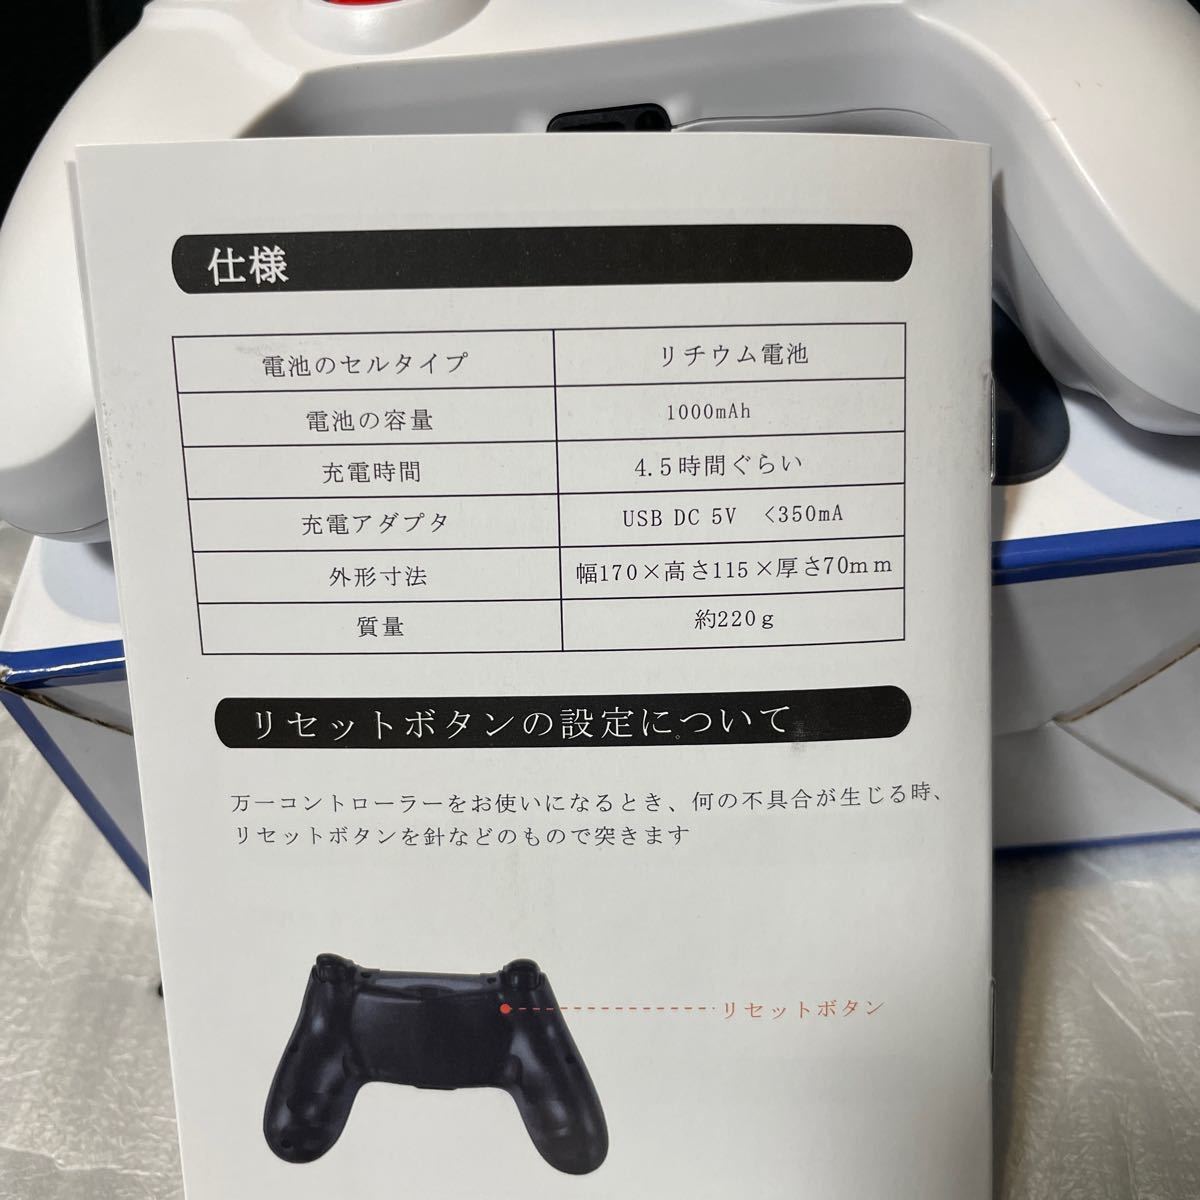 PS4コントローラー 6軸ジャイロセンサー付き（Windows PC 対応）